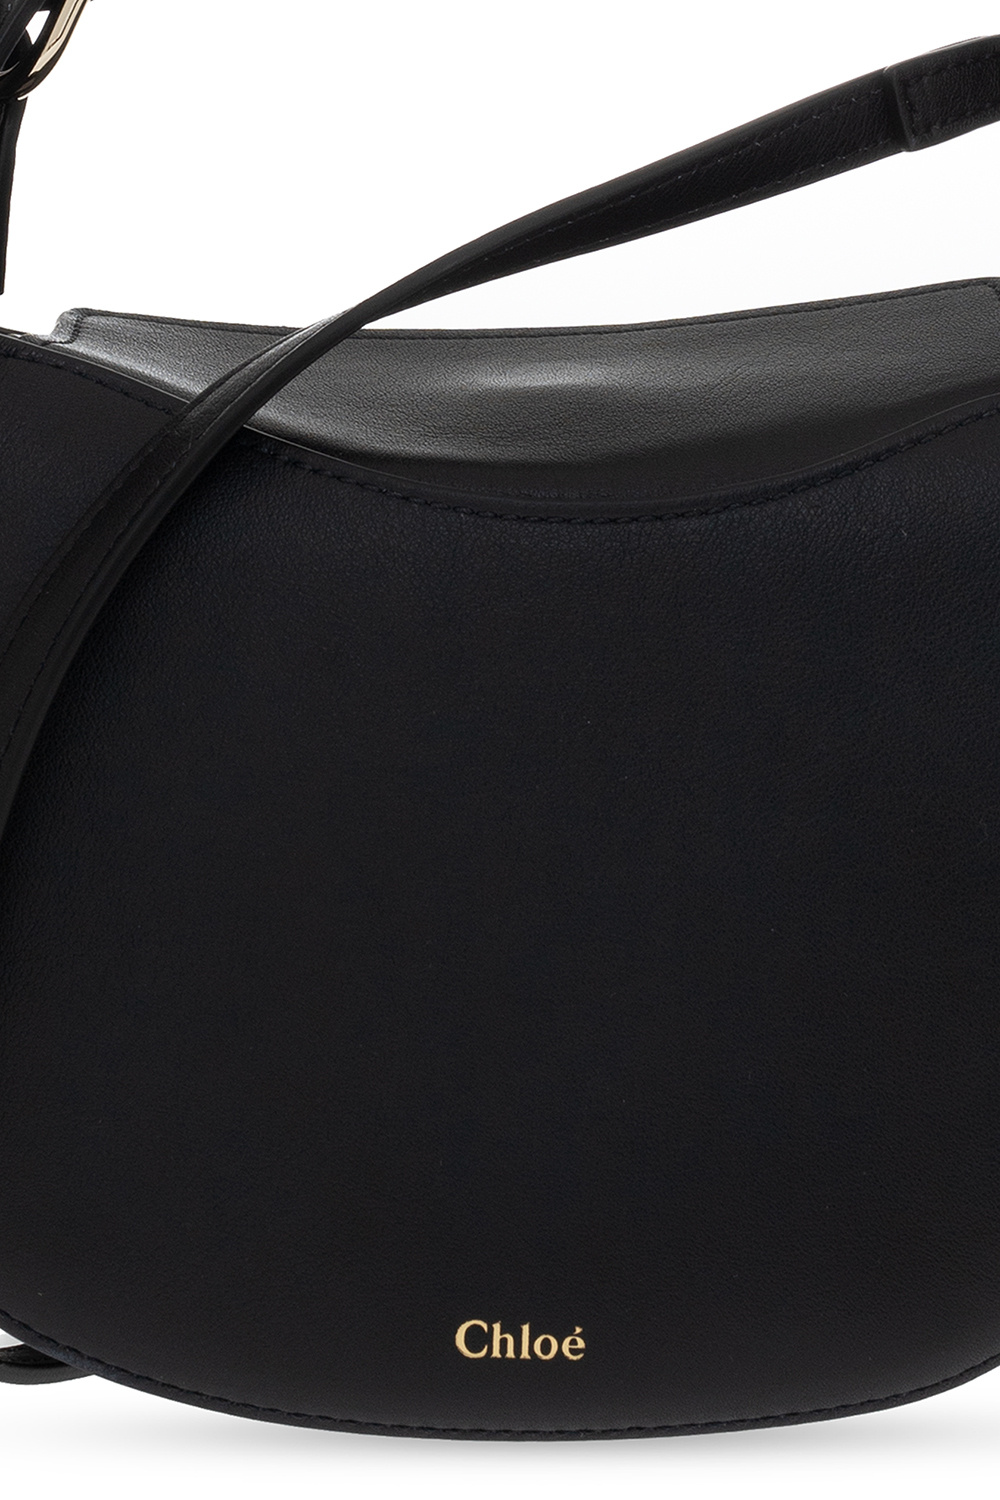 Chloé 'Kiss' shoulder bag | Women's Bags | IetpShops